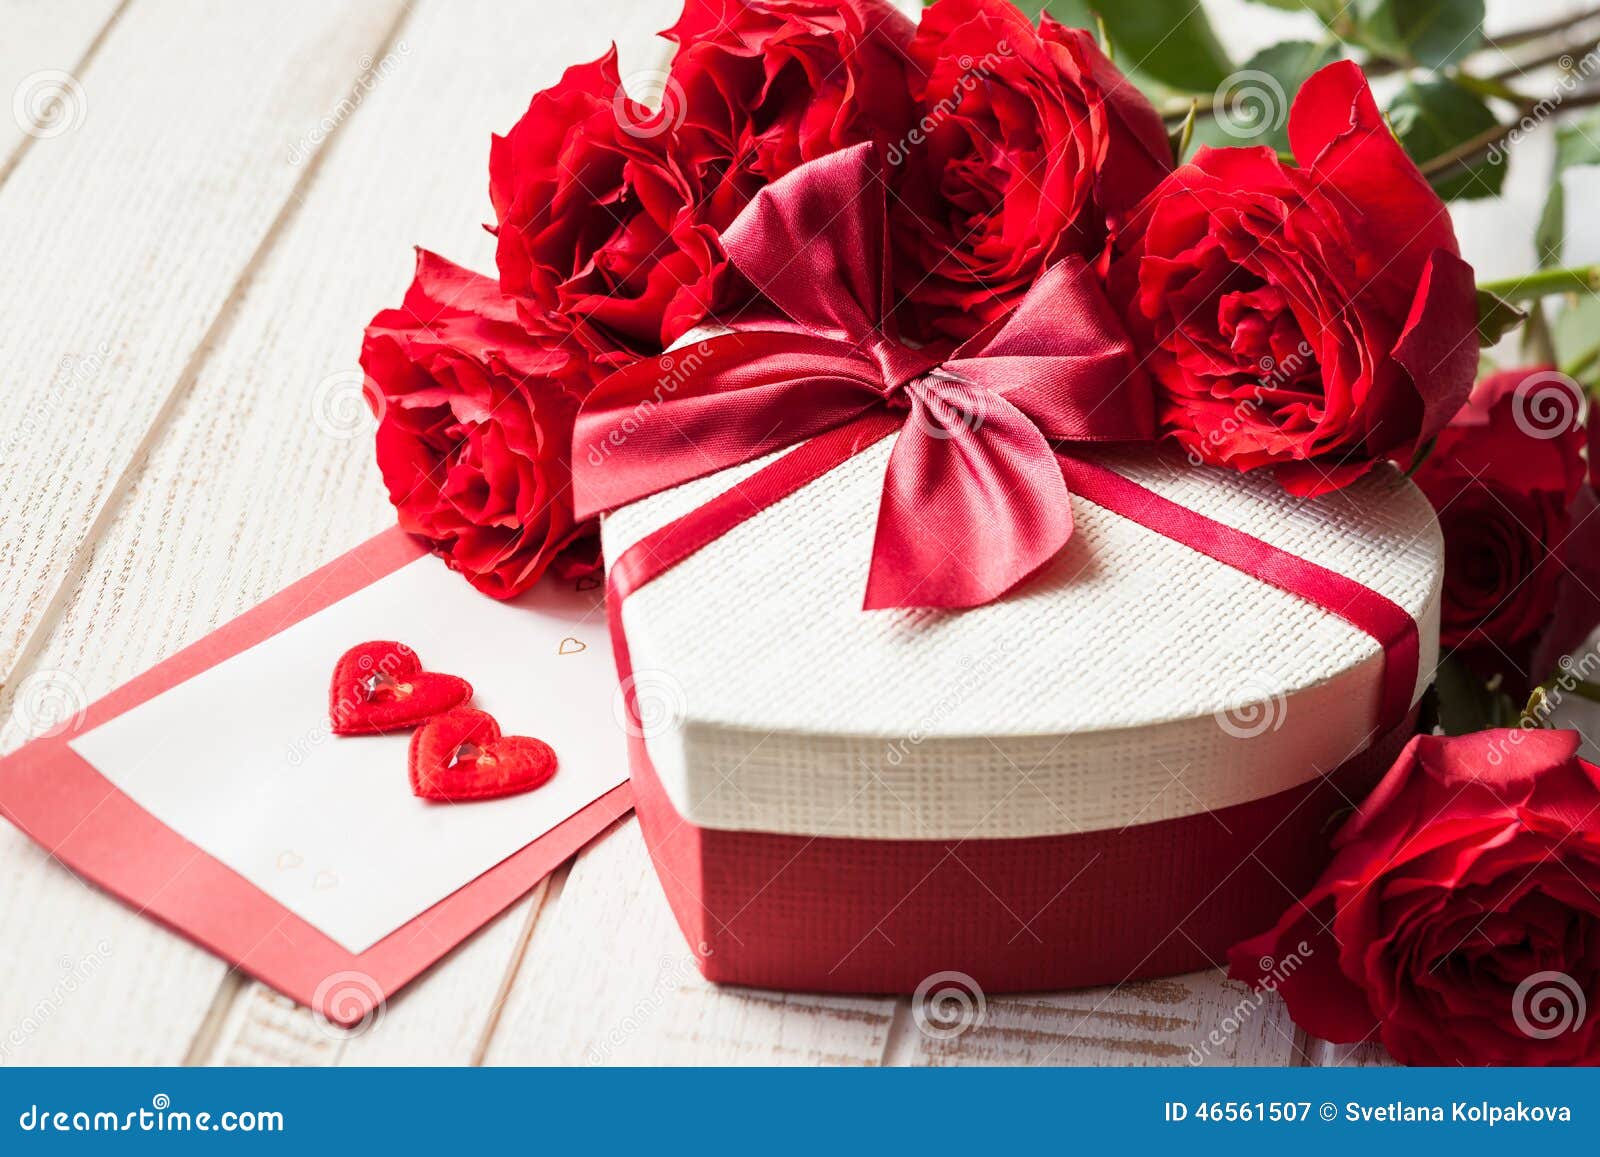 Regalo Y Rosas Del Día De Tarjeta Del De San Valentín Imagen de archivo Imagen de belleza, idea: